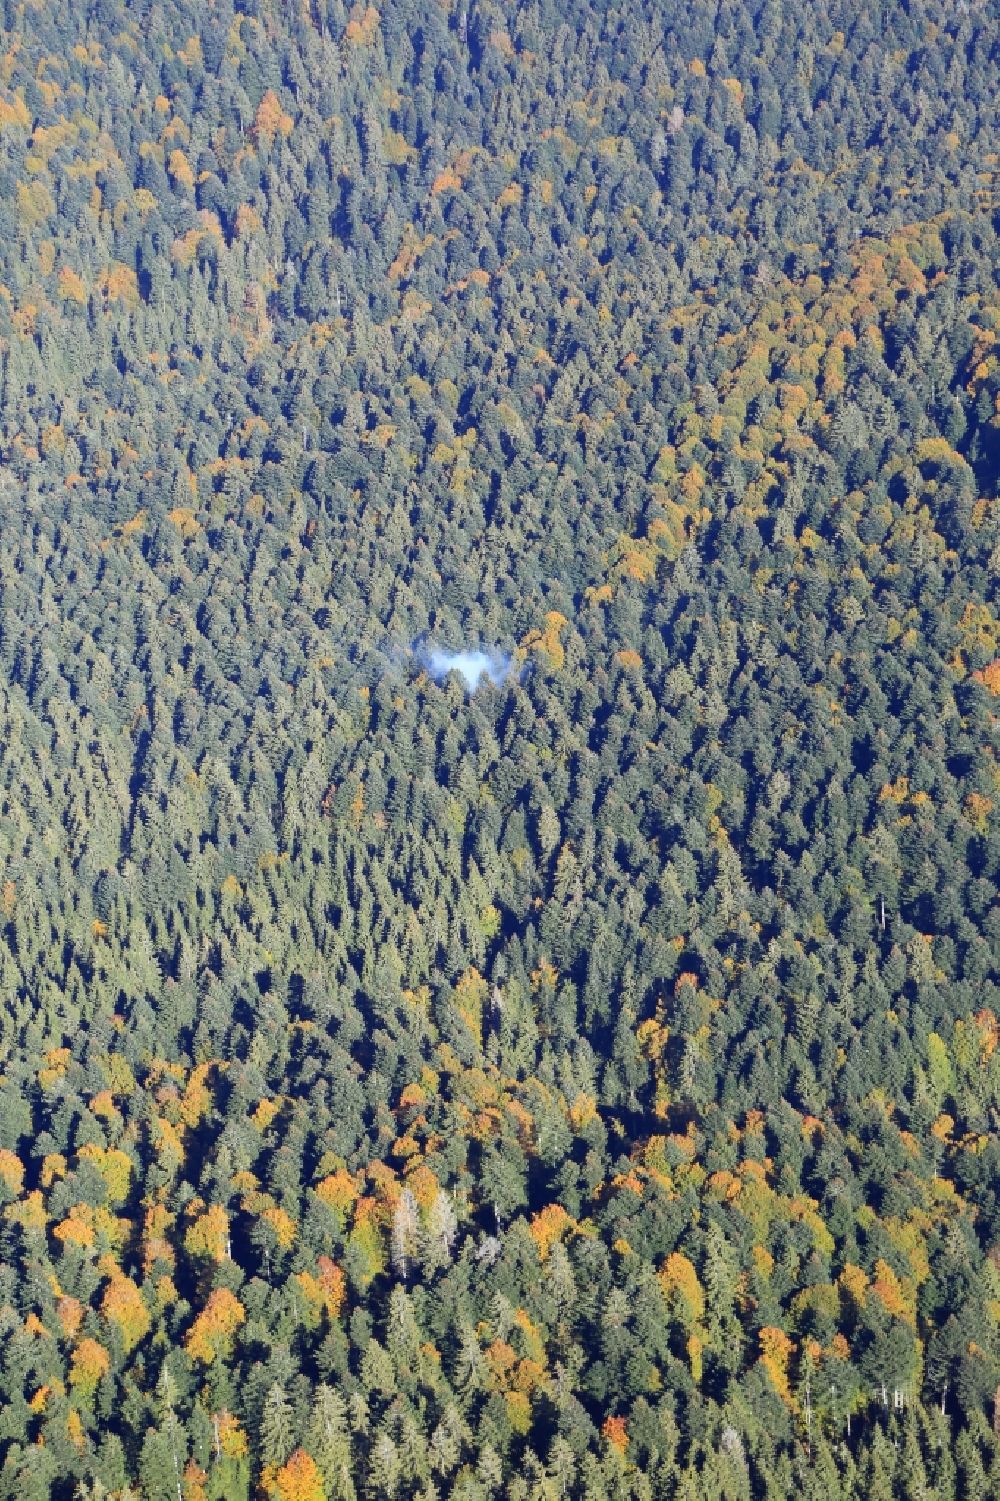 Todtmoos von oben - Rauchschwaden einer Feuerstelle im Baumbestand eines Waldgebietes im Südschwarzwald bei Todtmoos im Bundesland Baden-Württemberg, Deutschland